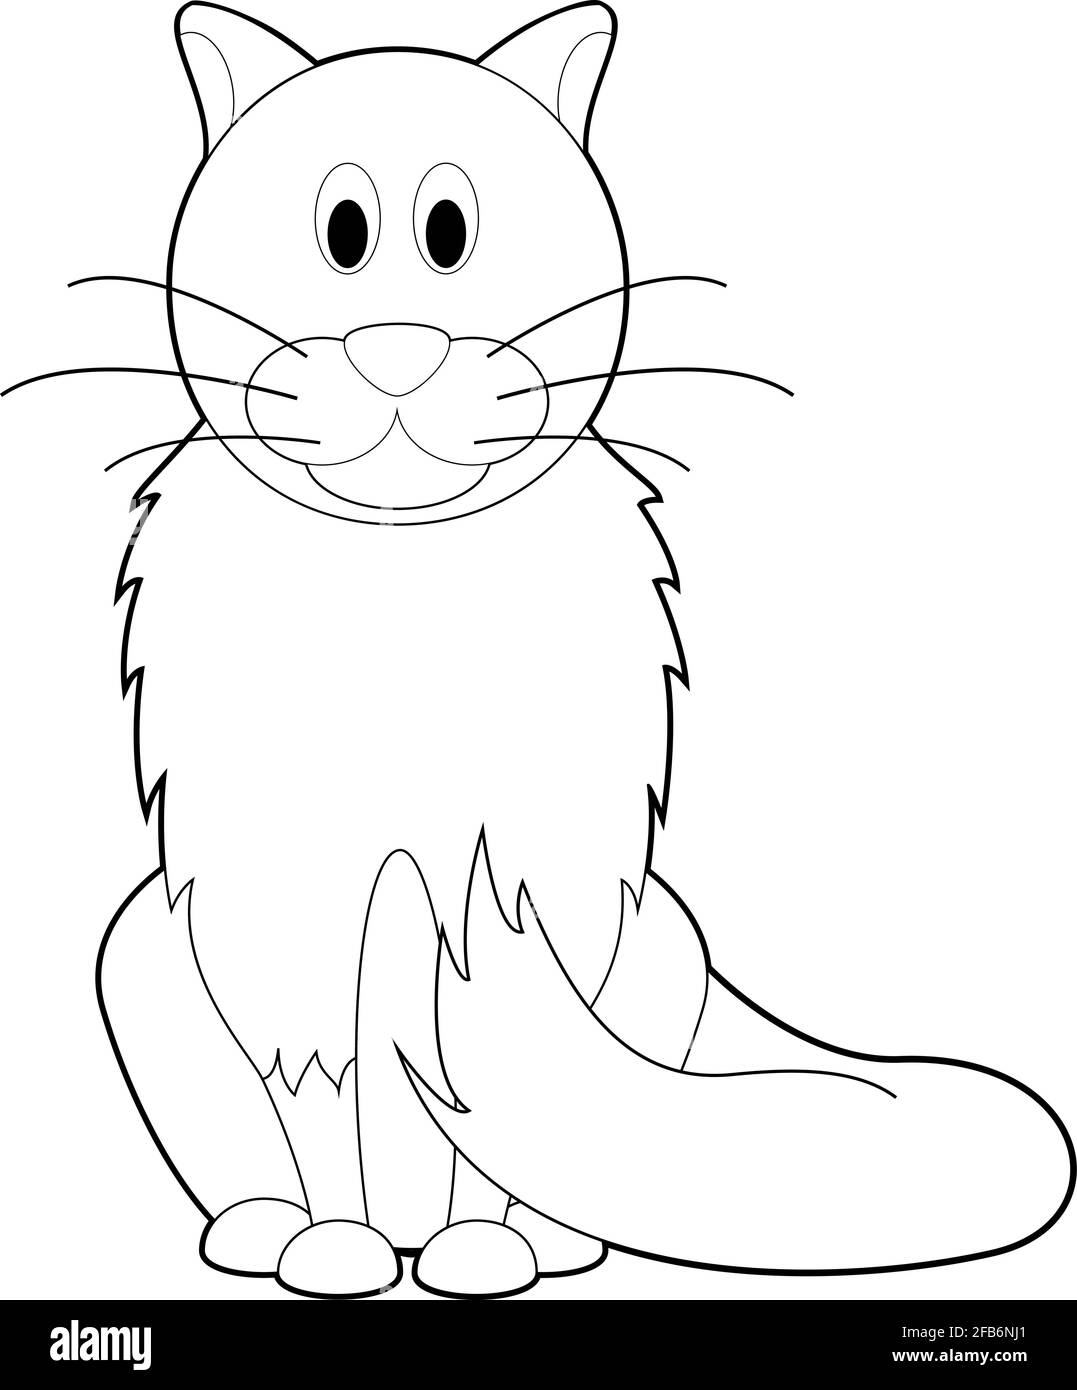 How to Draw a Cartoon Cat for Kids-saigonsouth.com.vn